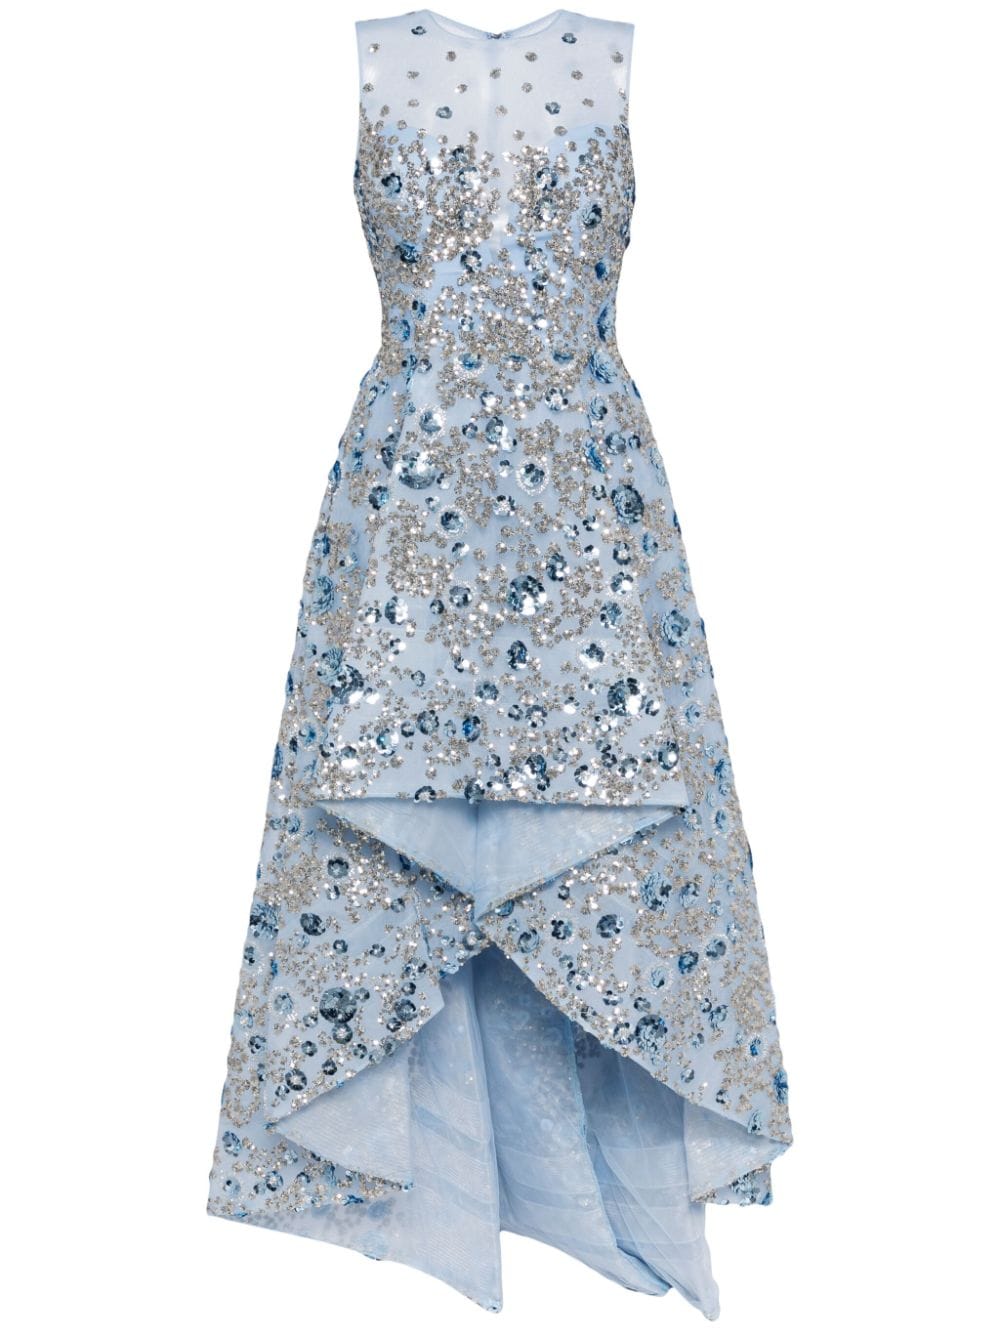 Saiid Kobeisy sequin-embellished tulle dress - Blue von Saiid Kobeisy